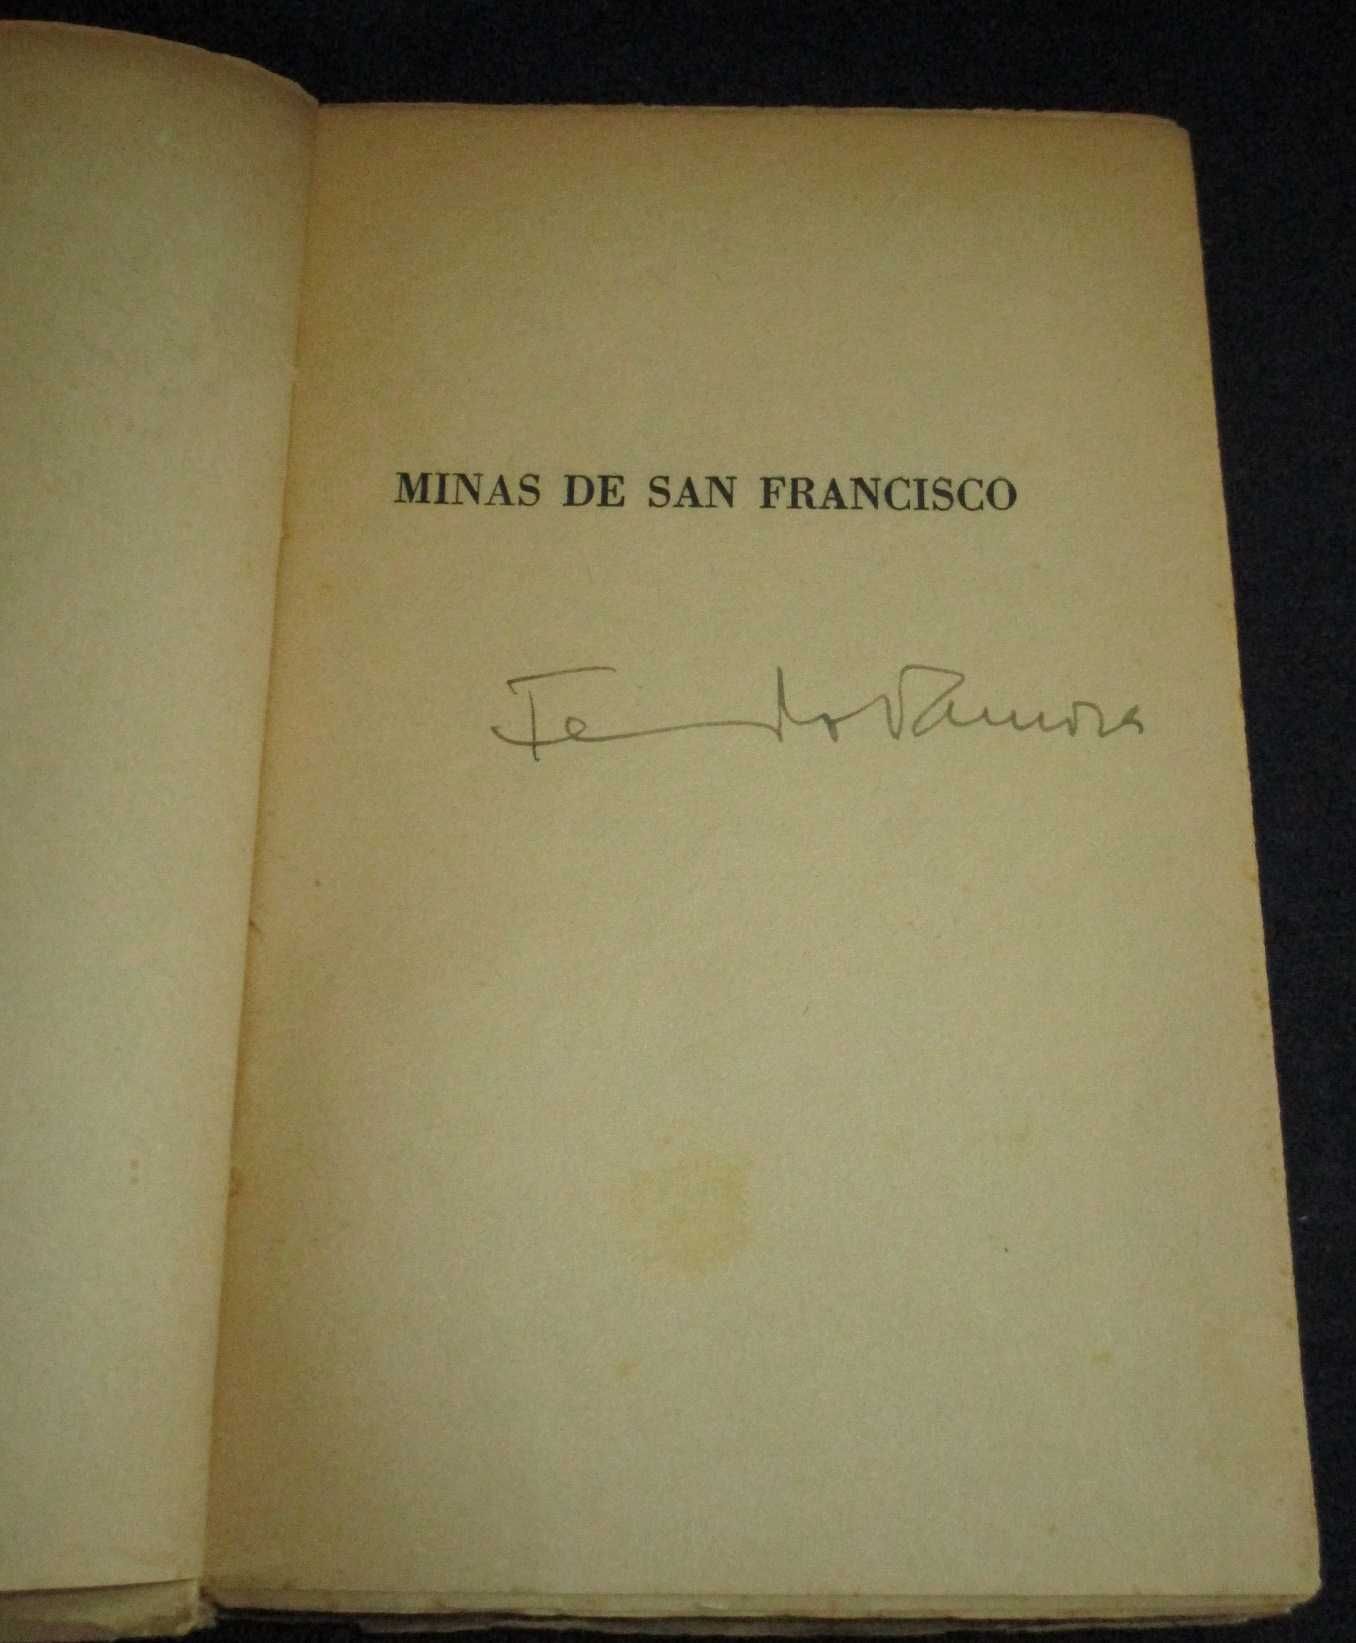 Livro Minas de San Francisco Fernando Namora 1981